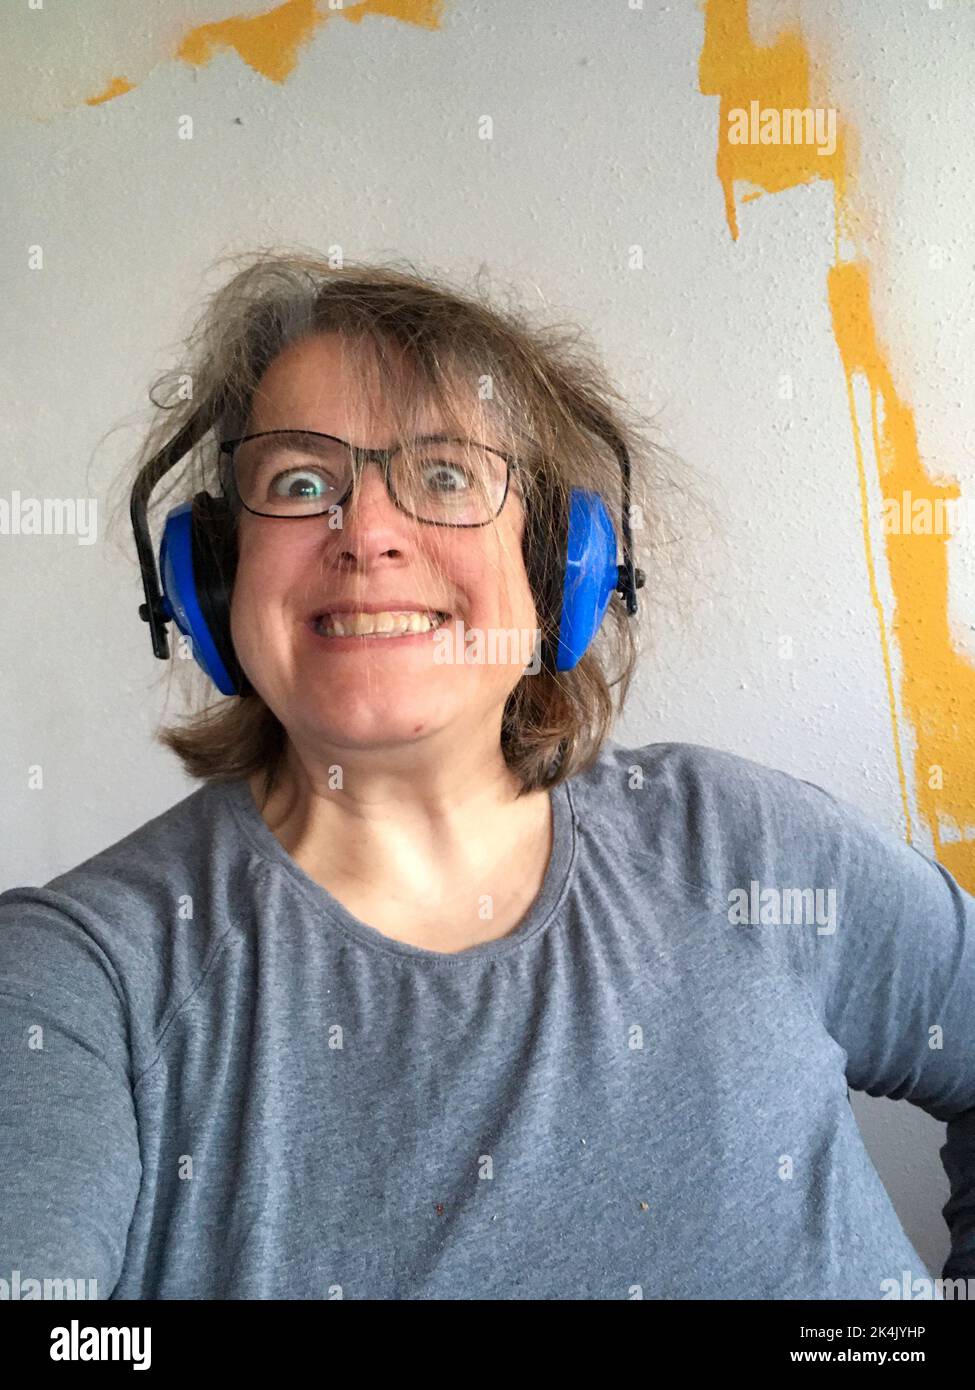 Frau mit Kopfhörer abstehenden Haaren, genervt vom Lärm Foto Stock